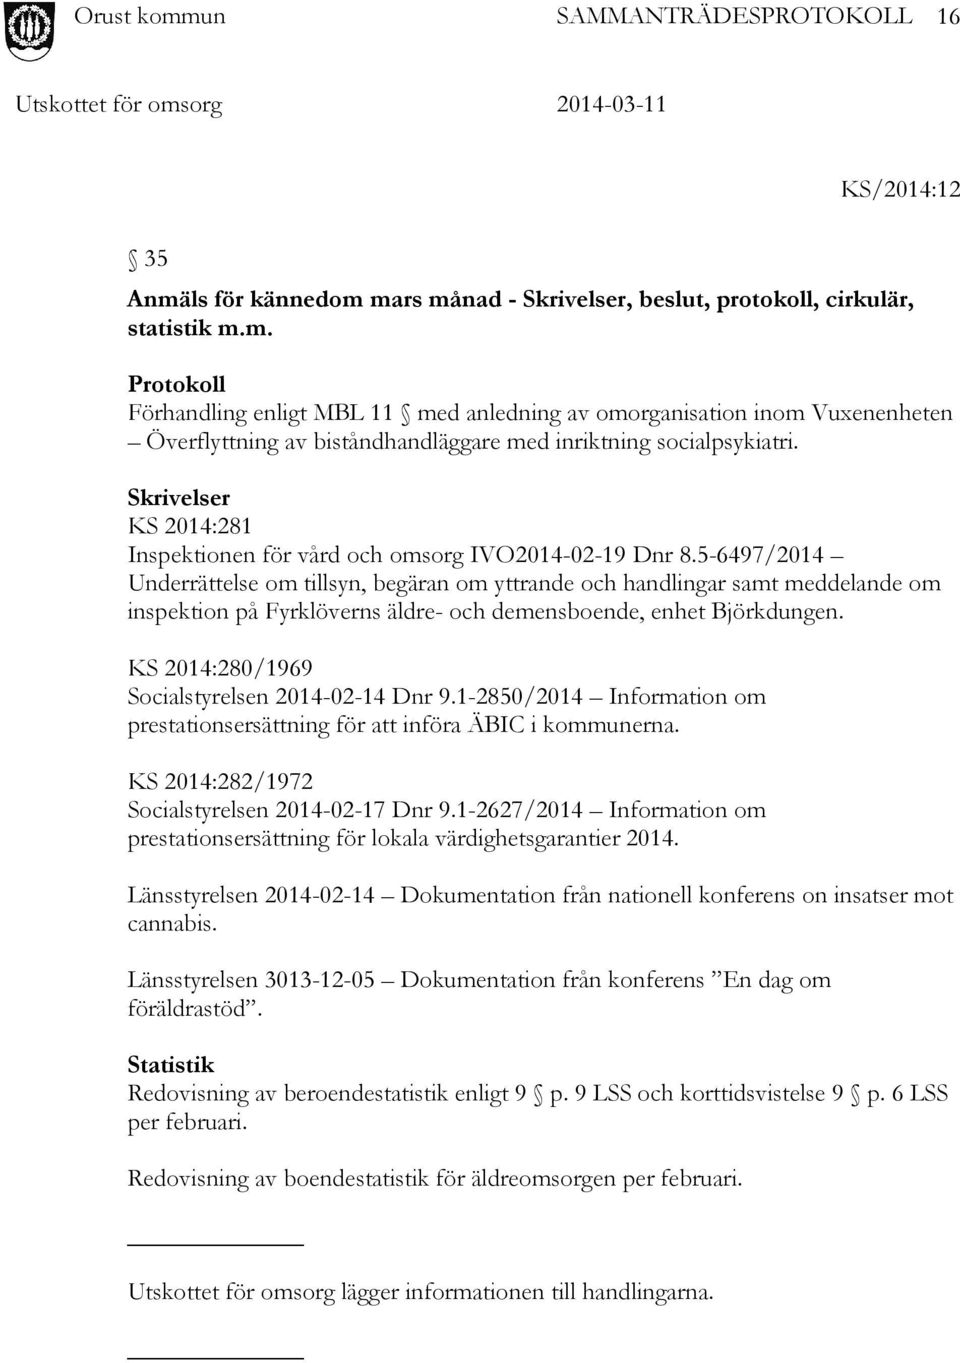 5-6497/2014 Underrättelse om tillsyn, begäran om yttrande och handlingar samt meddelande om inspektion på Fyrklöverns äldre- och demensboende, enhet Björkdungen.